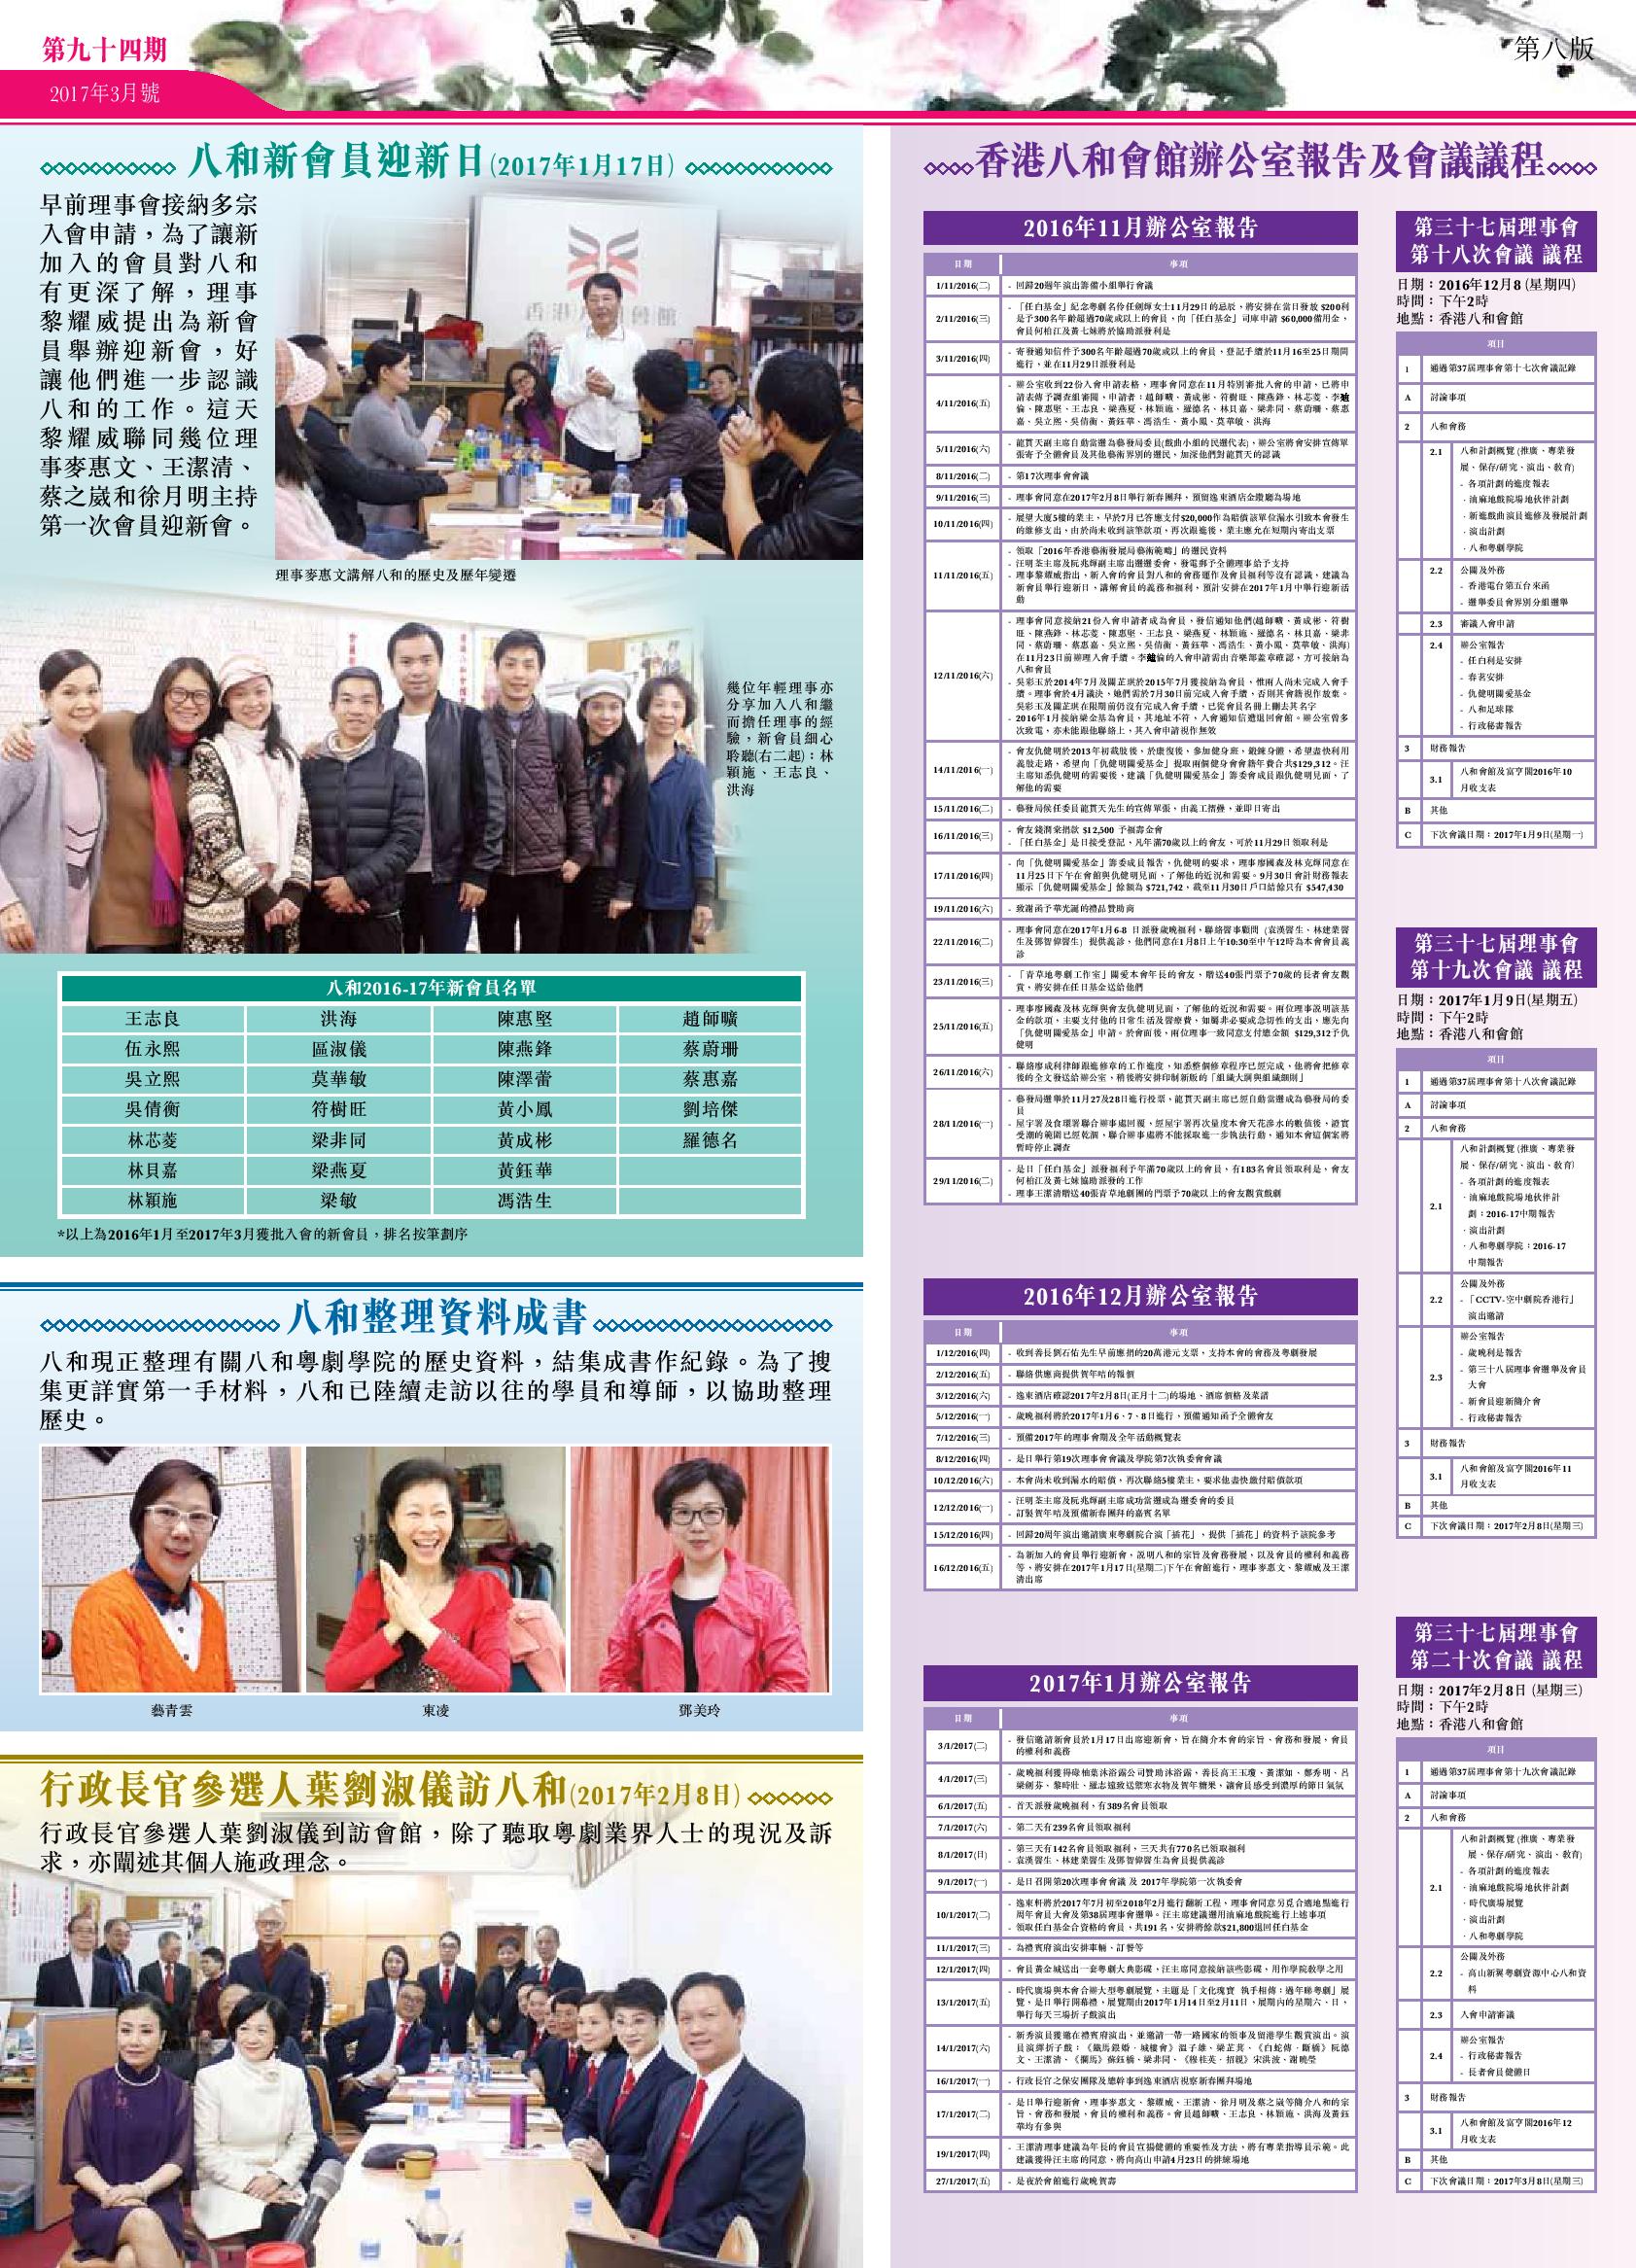 八和新會員迎新日 | 八和整理資料成書 | 行政長官參選人葉劉淑儀訪八和 | 香港八和會館辦公室報告（2016年11月至2017年1月）及第三十七屆理事會 第十八至二十次會議 議程會議議程